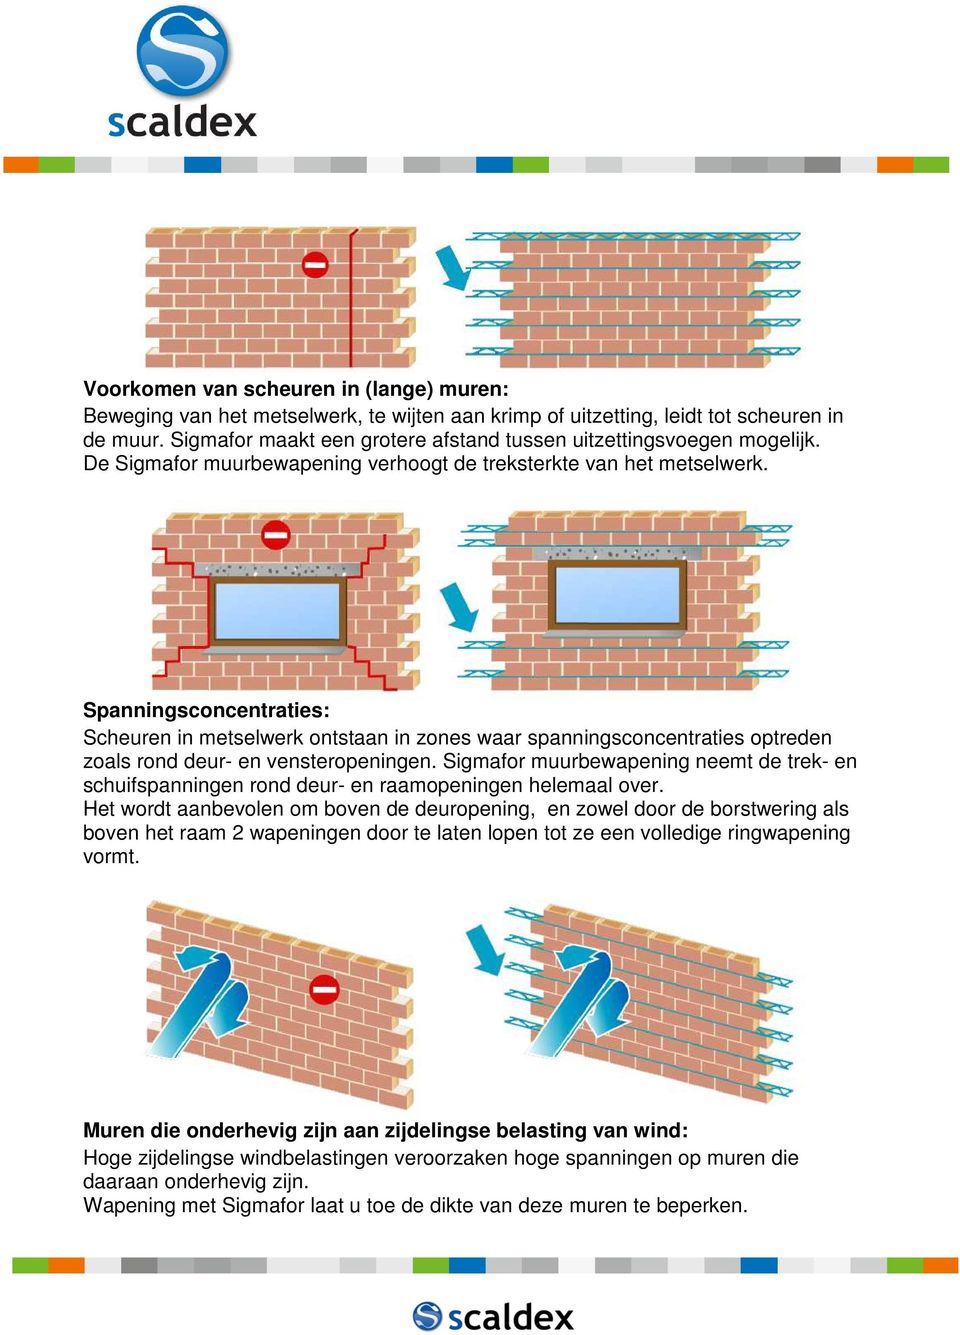 Spanningsconcentraties: Scheuren in metselwerk ontstaan in zones waar spanningsconcentraties optreden zoals rond deur- en vensteropeningen.